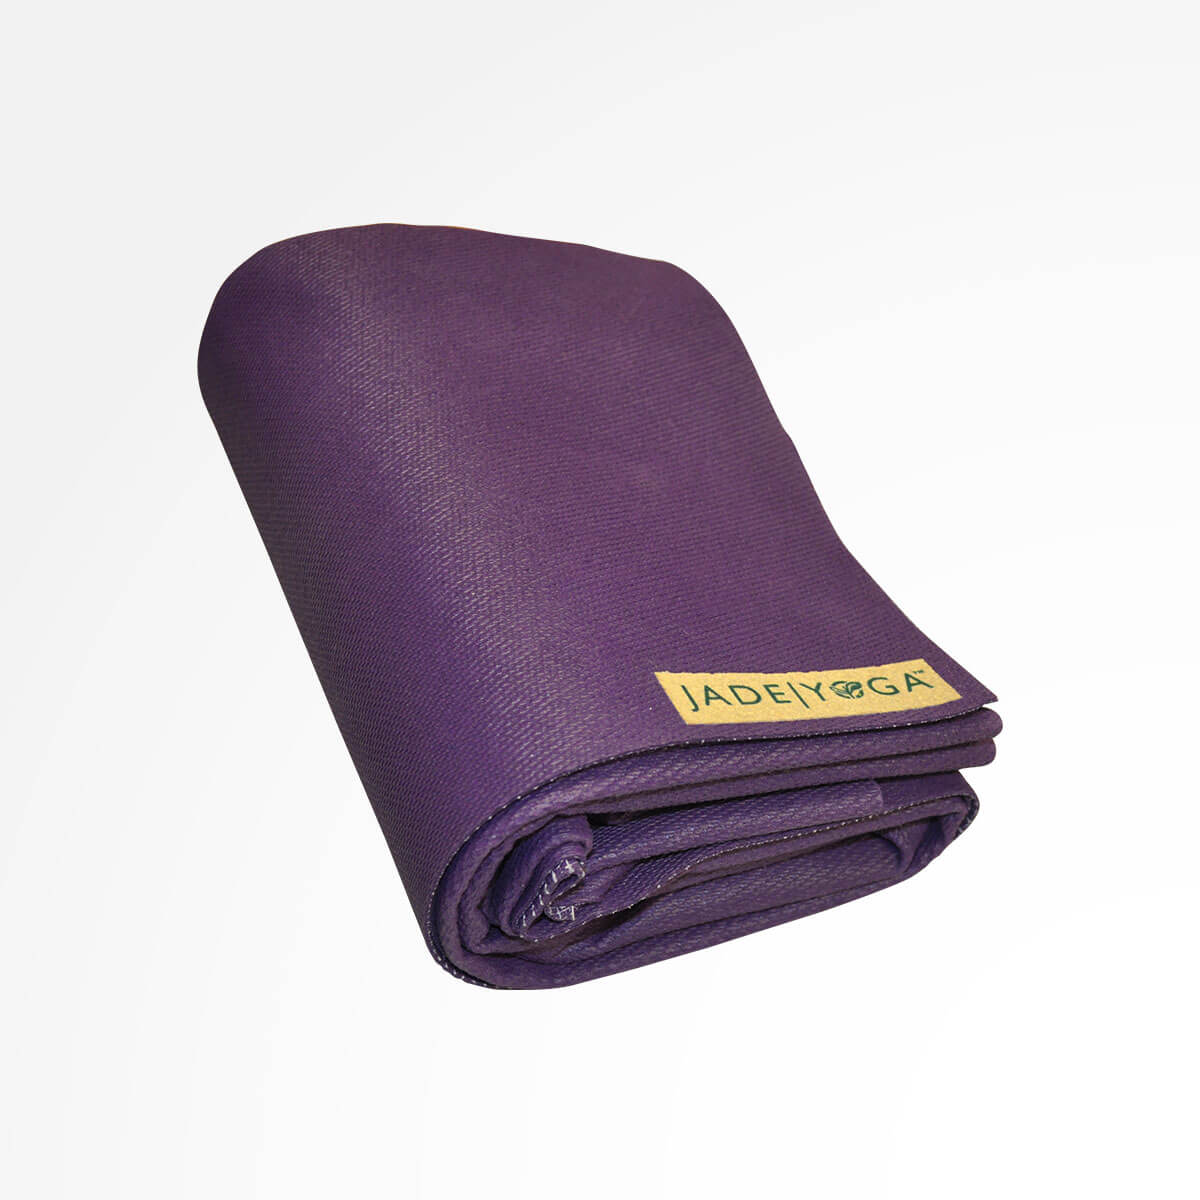 Jade Yoga Voyager Yoga Mat, Purple